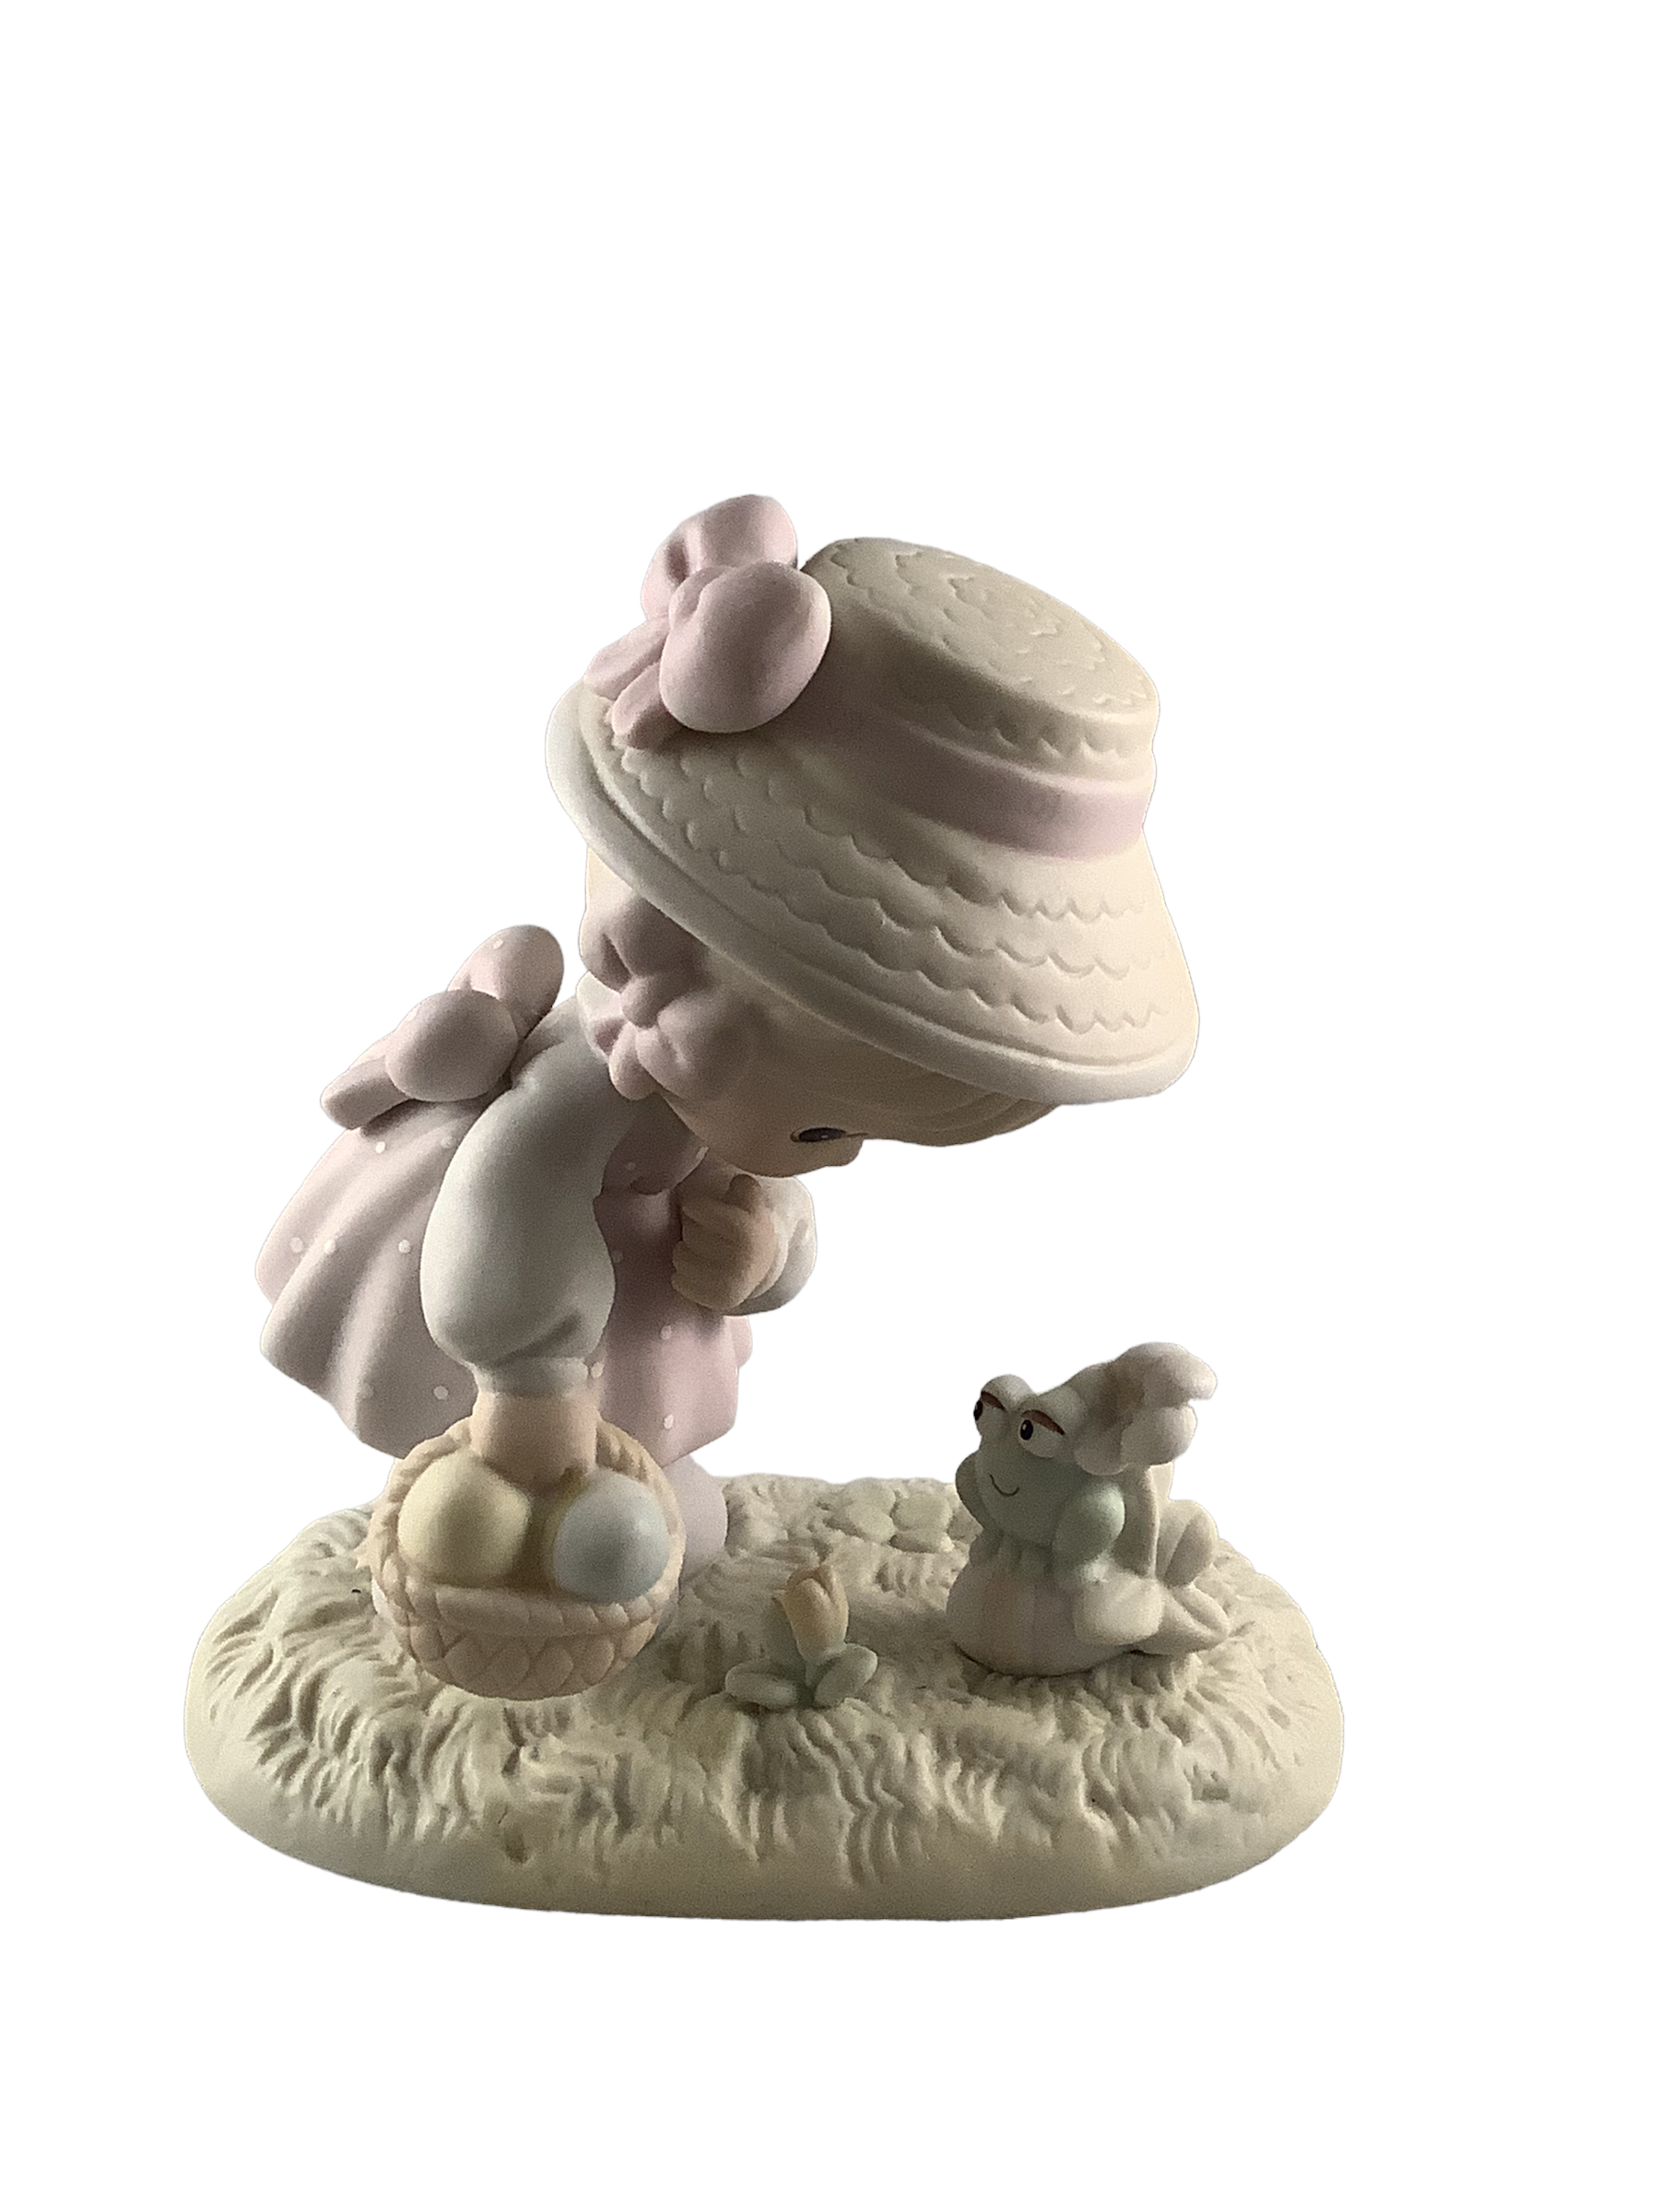 Hoppy Easter, Friend - Precious Moment Figurine